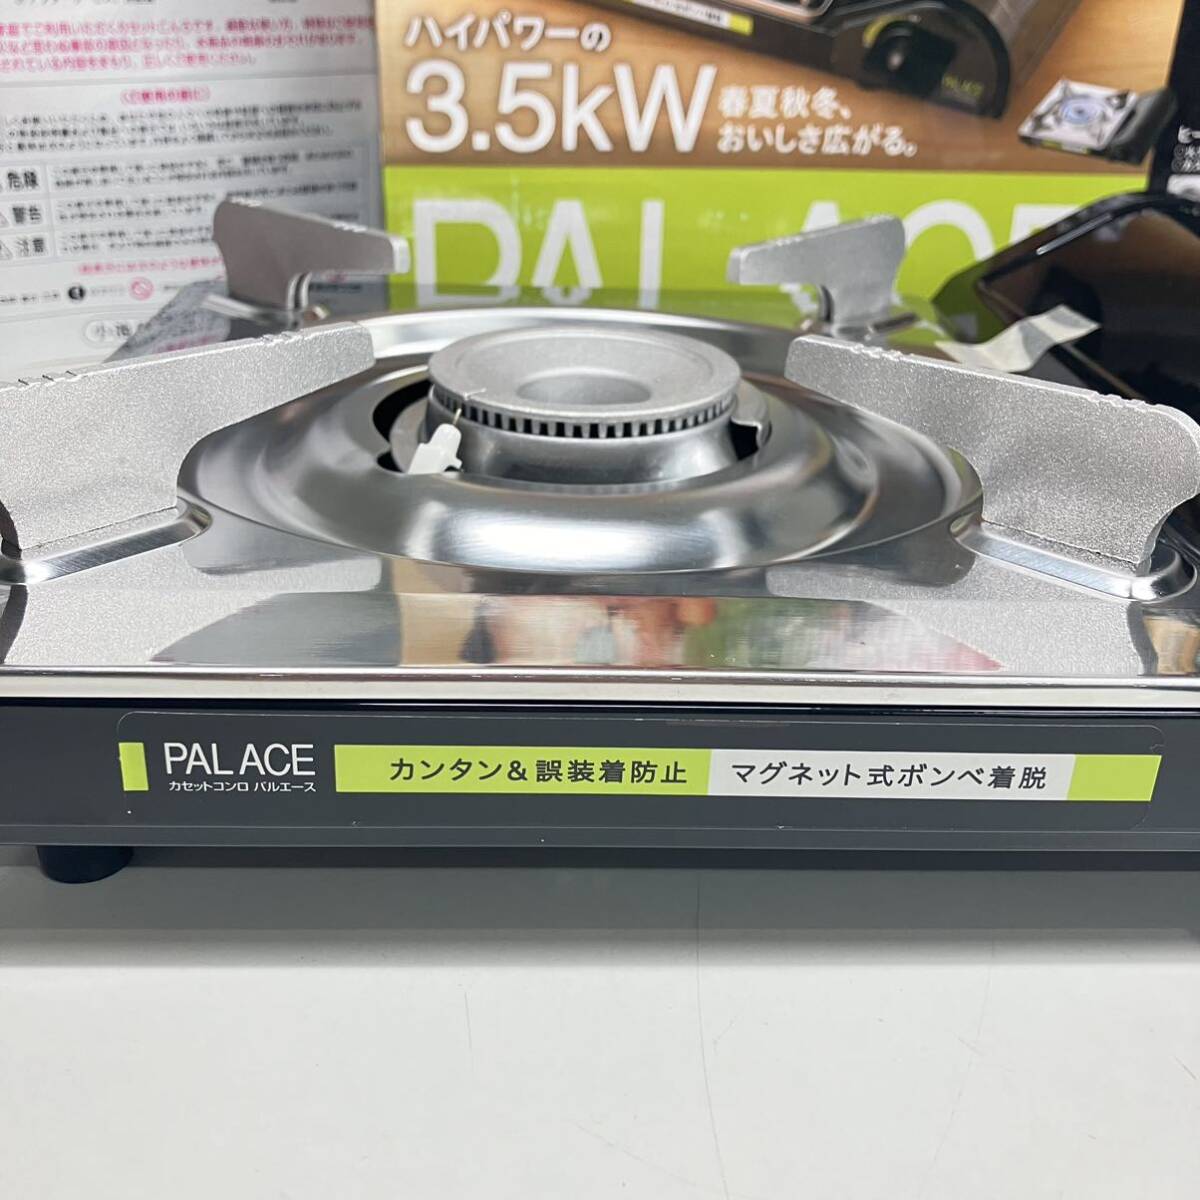 1 иен ~ 4T [ не использовался ] портативная плита Pal Ace PV-35M-DQ настольная плитка PALACE работоспособность не проверялась ширина 334× глубина 272× высота 84mm с коробкой High Power 